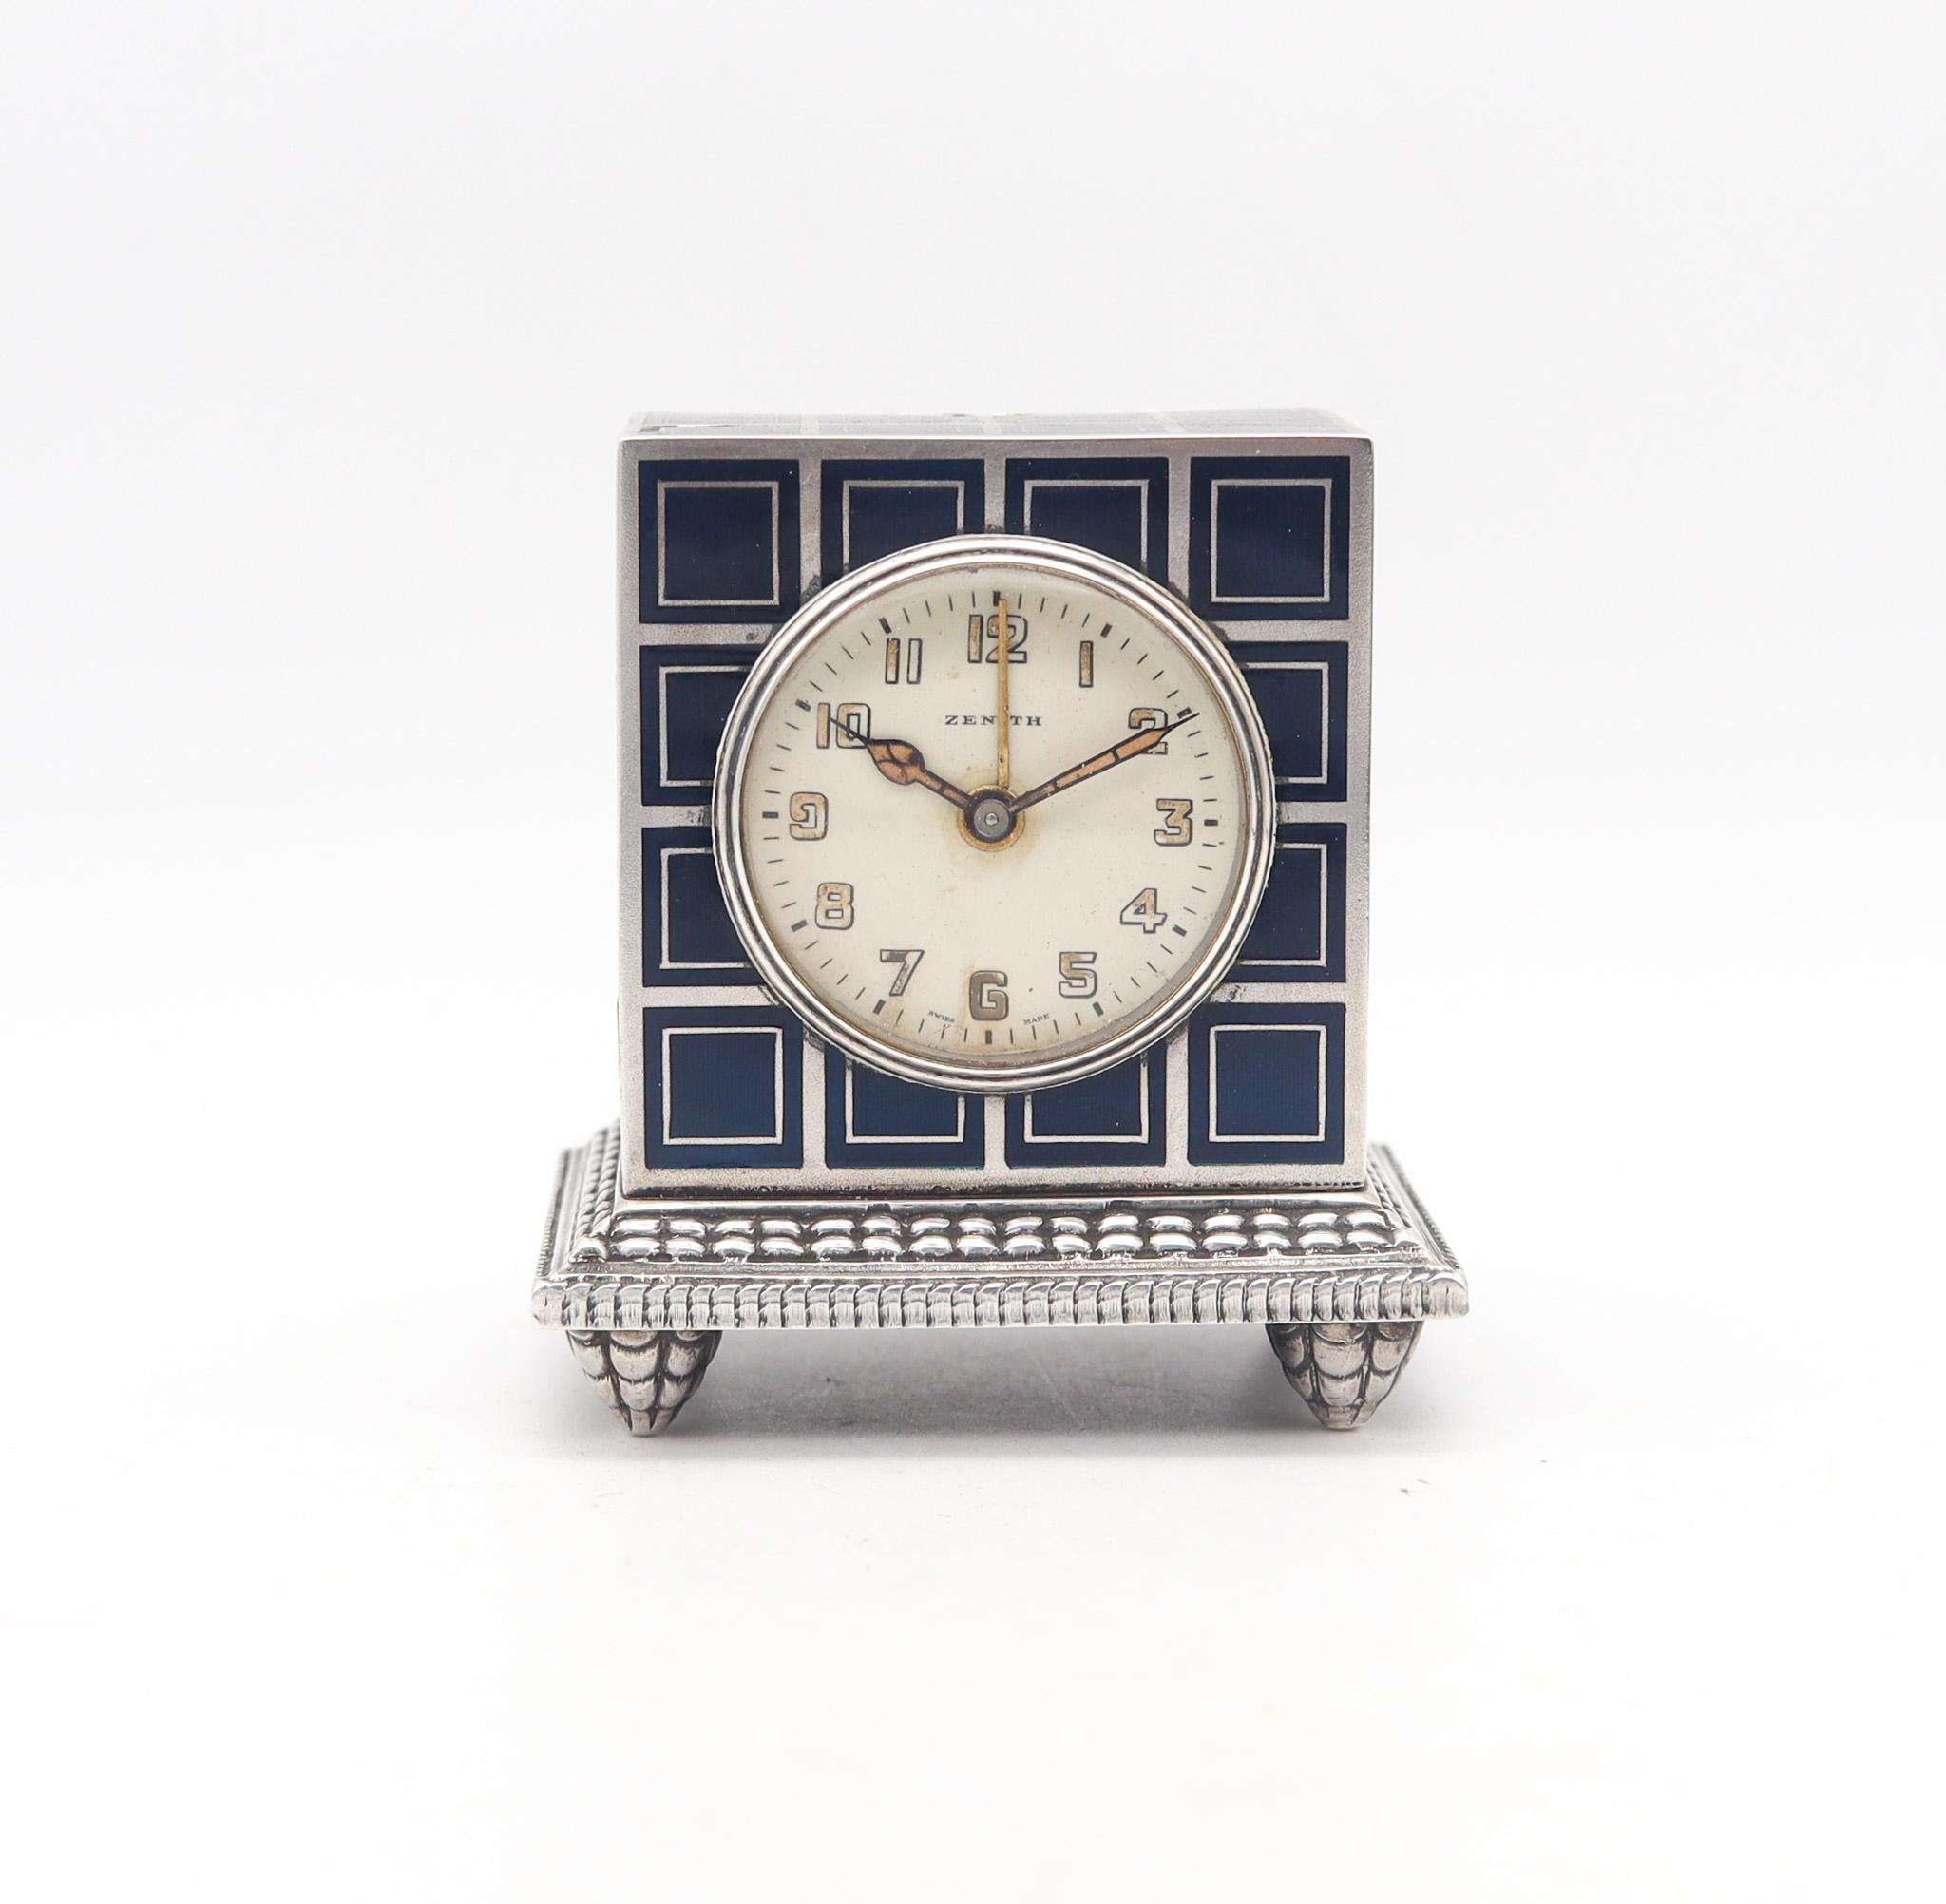 Ein Miniatur-Reisewecker, entworfen von Zenith.

Dies ist eine wunderschöne Reise-Wagen Miniatur-Wecker, hergestellt in Genf Schweiz von der Firma Zenith Diese antike kleine Uhr ist außergewöhnlich und wurde während der Art-Deco-Periode, zurück in